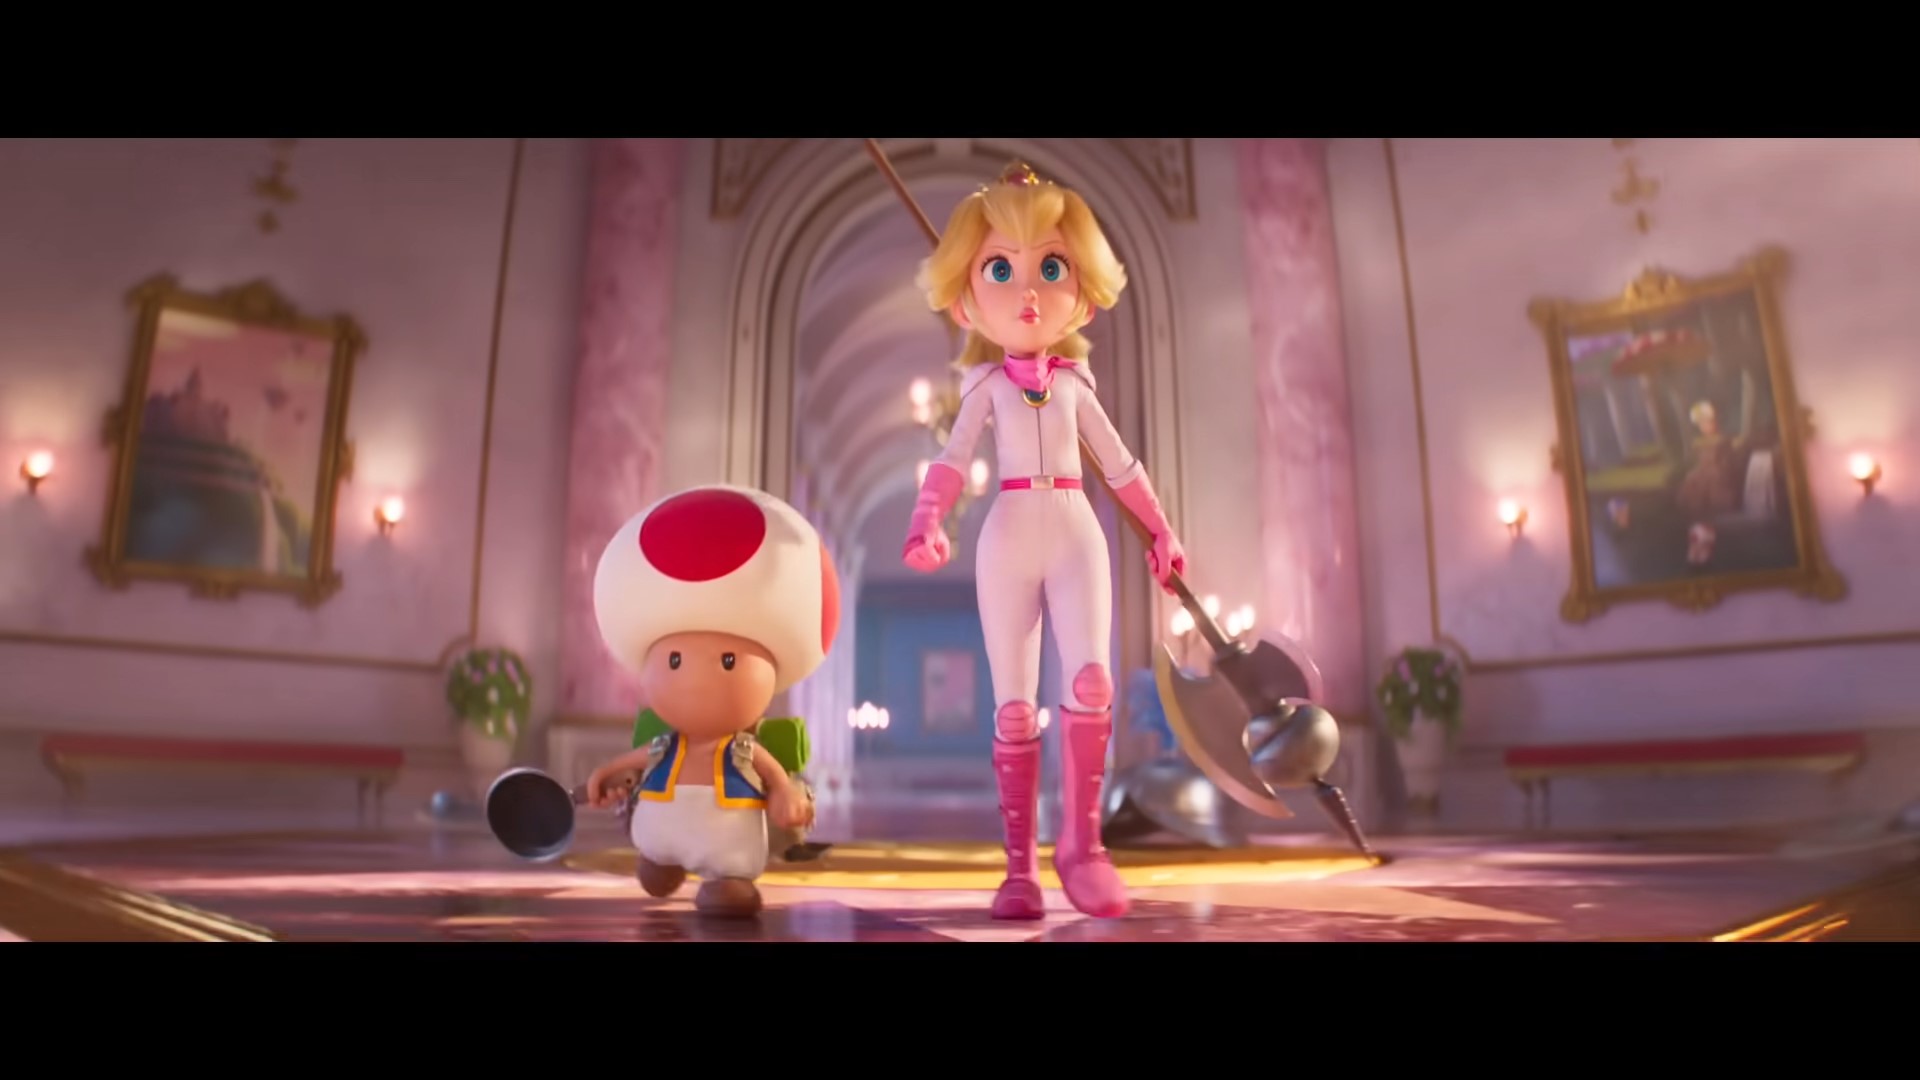 Crítica  Super Mario Bros: O Filme finalmente faz justiça à importância do  herói da Nintendo